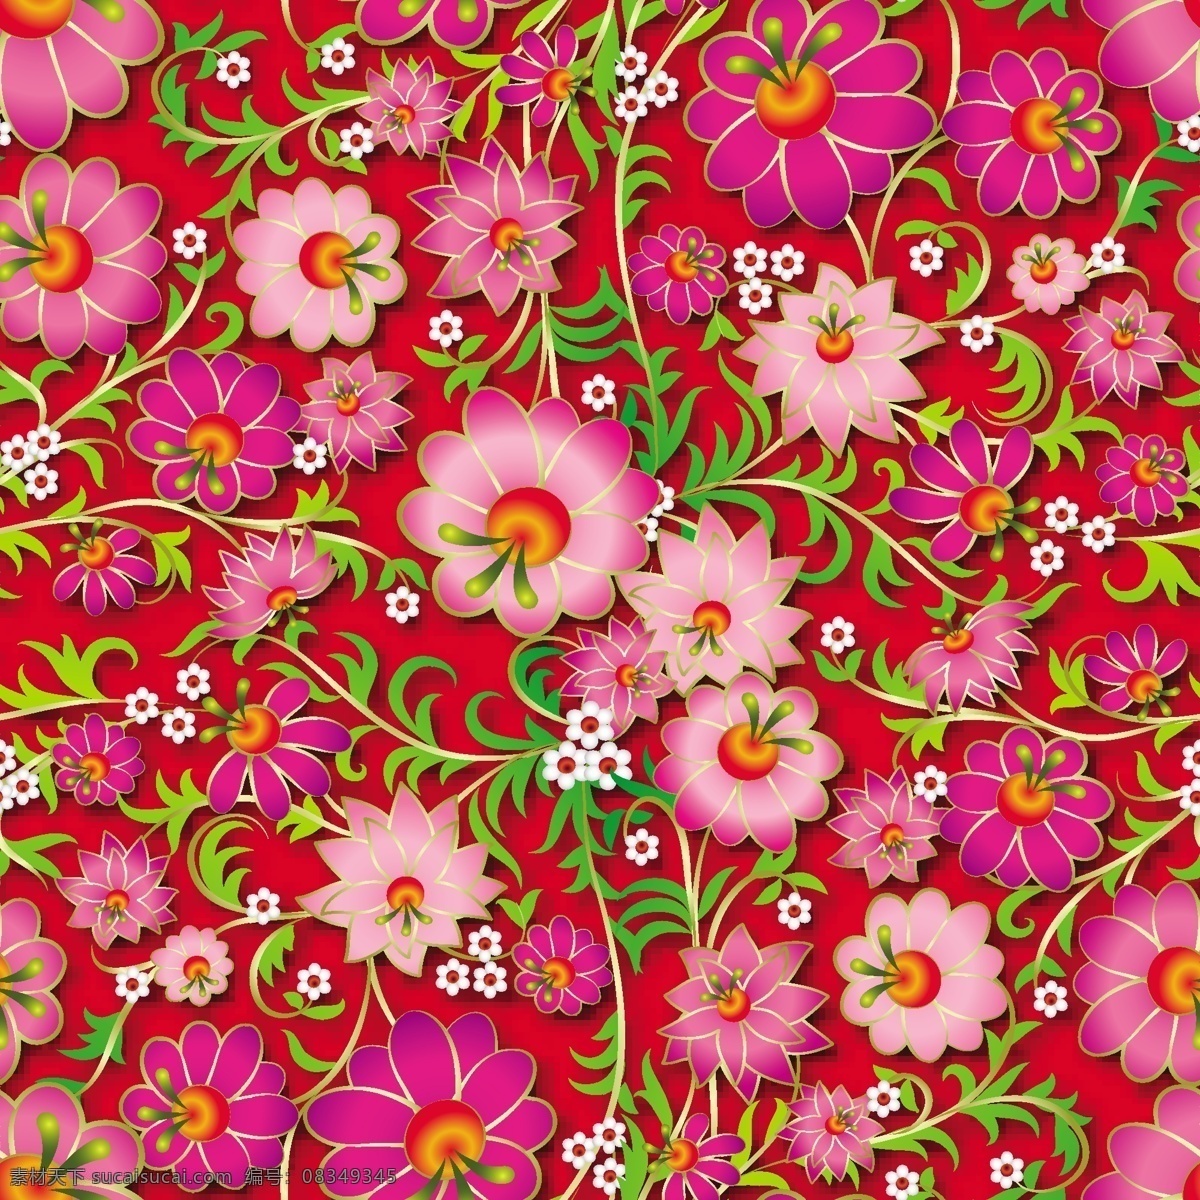 粉色 花朵 背景 图案 花纹 包装印刷 矢量 牵牛花 包装 底纹 礼盒 爱情 婚礼 情人节 纹理